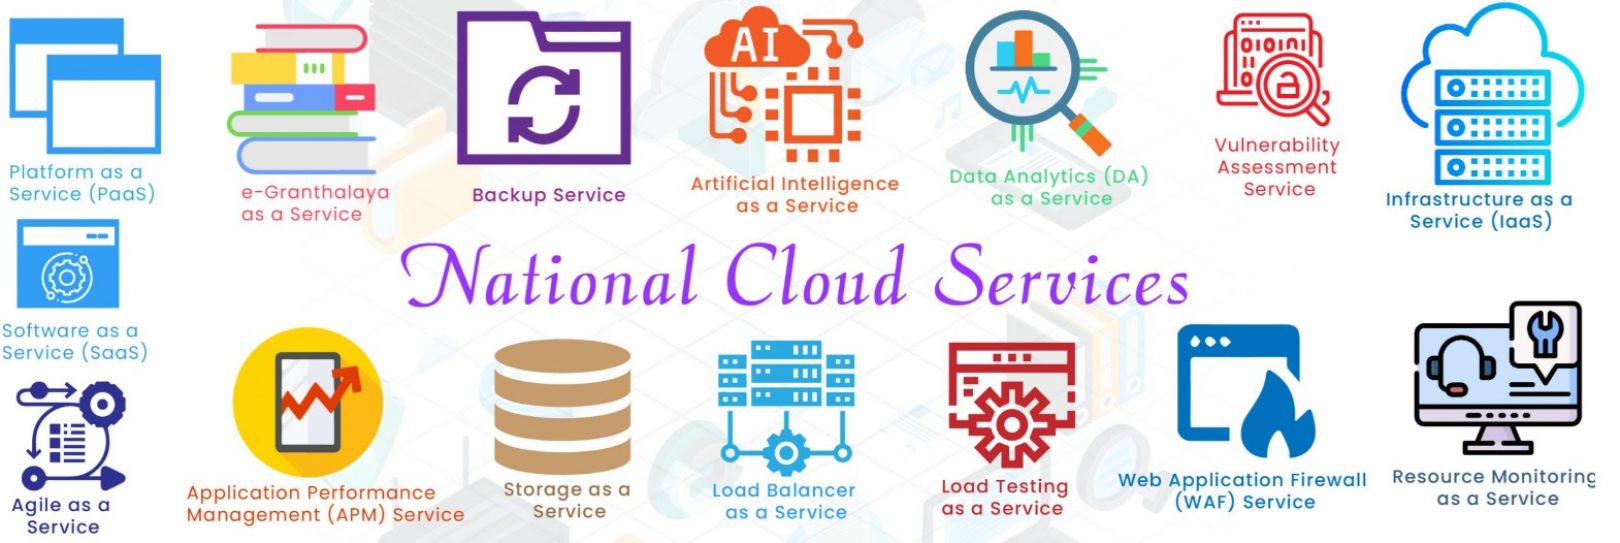 NIC Cloud Services